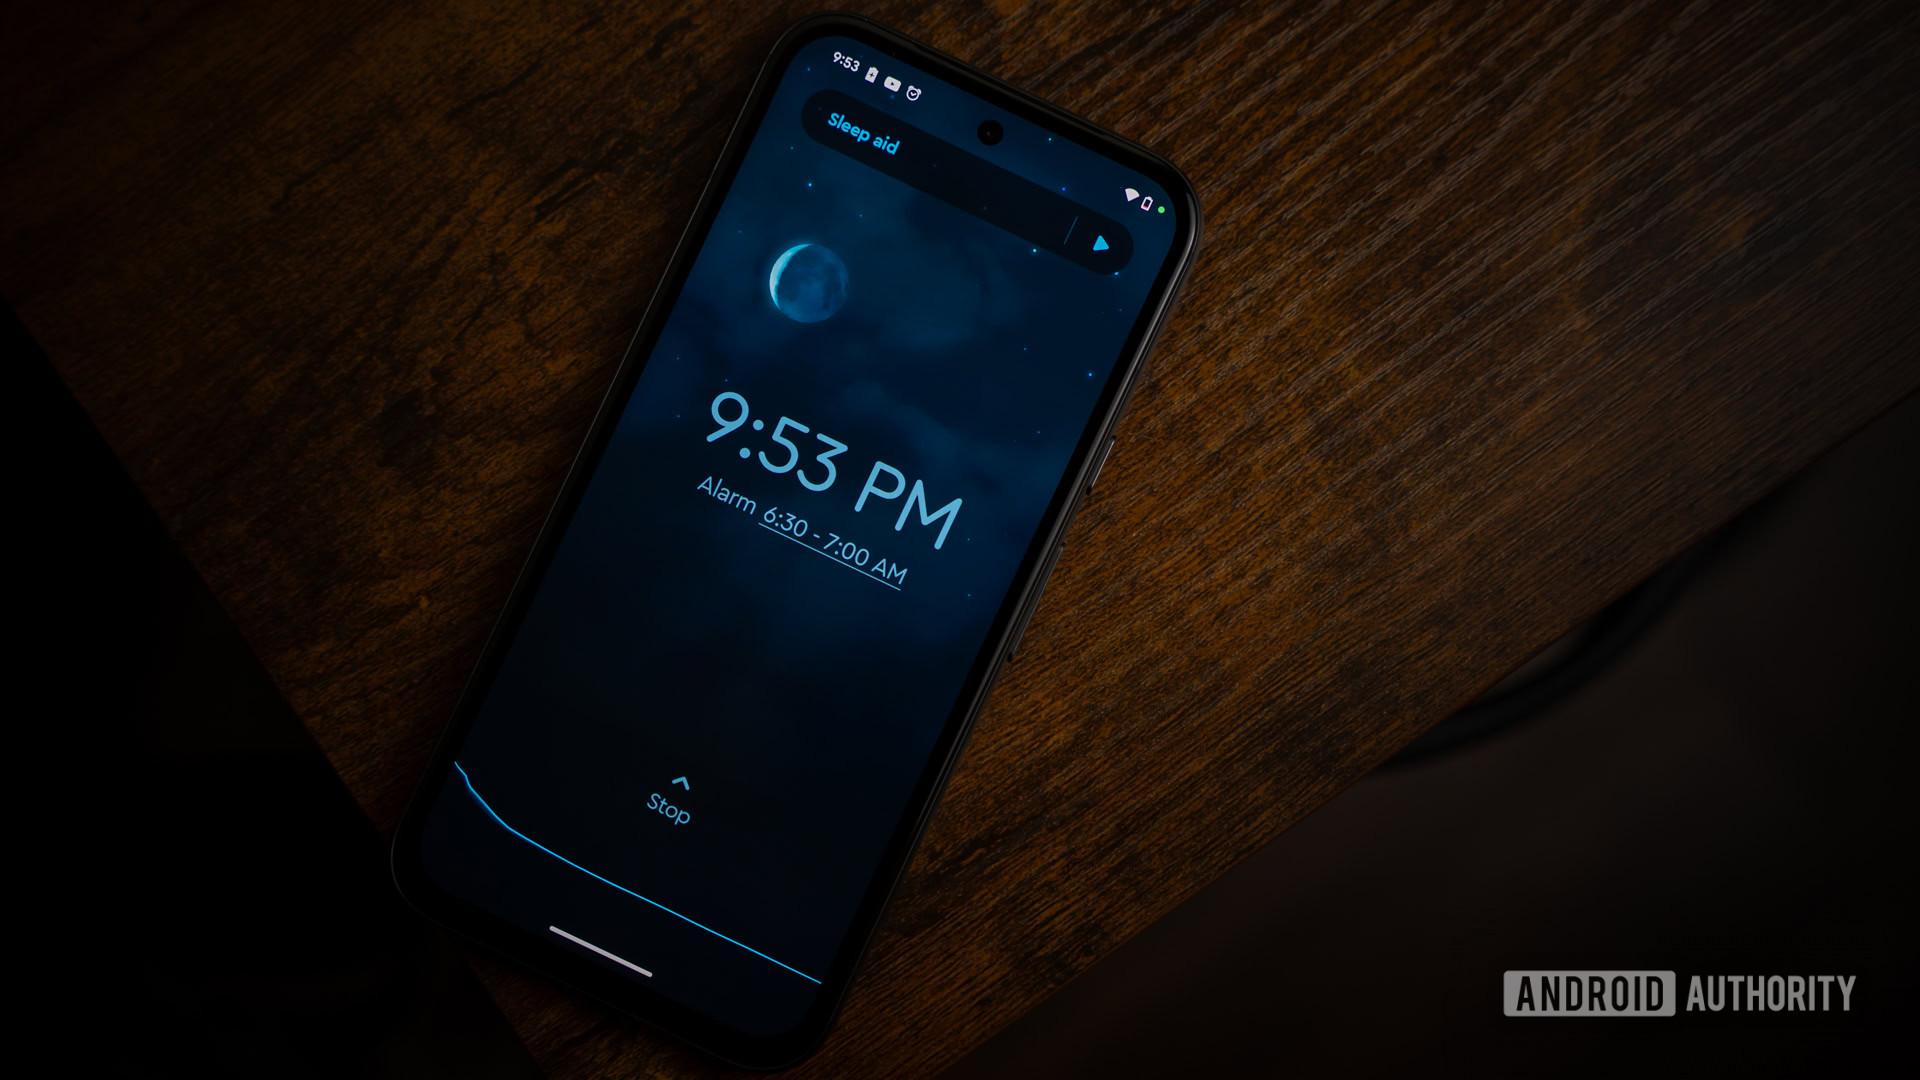 Sleep Cycle app on smartphone on bedside table (5)